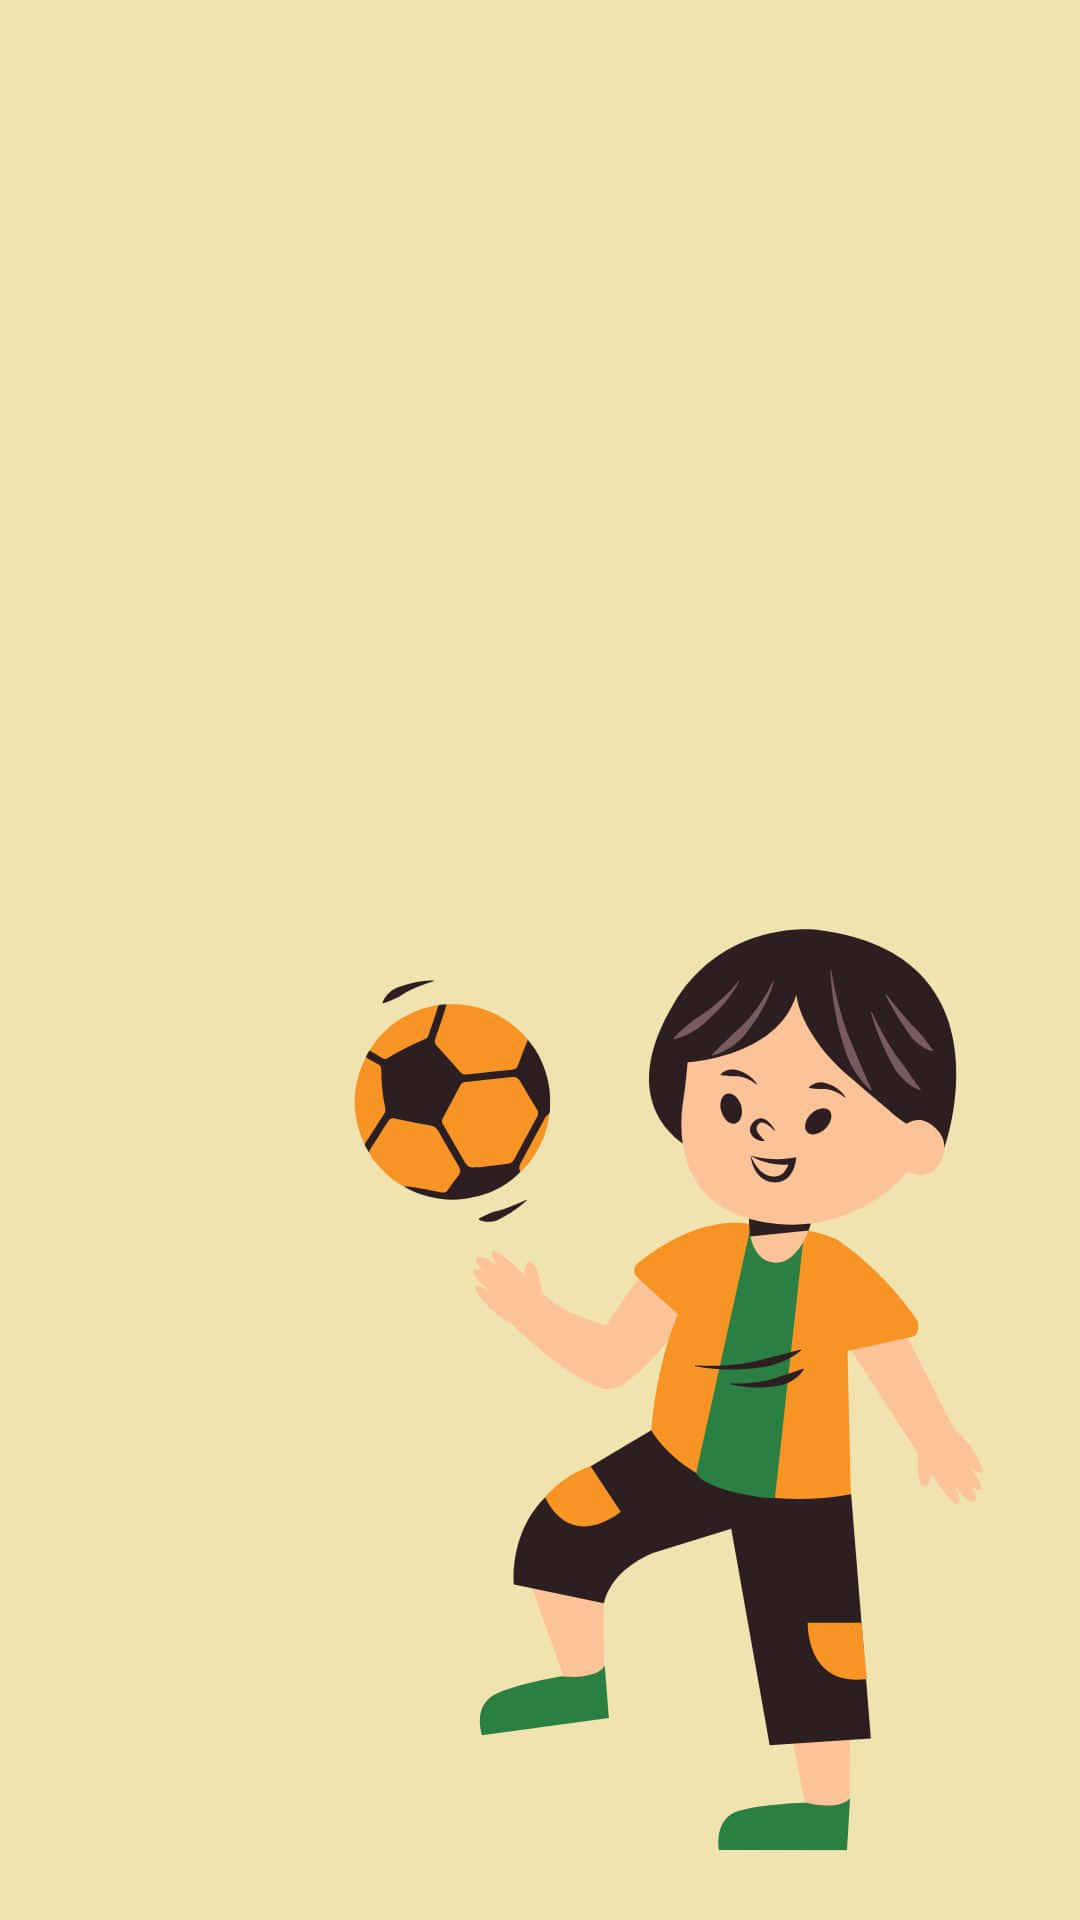 Hübscherjunge Cartoon Spielt Mit Einem Fußball. Wallpaper